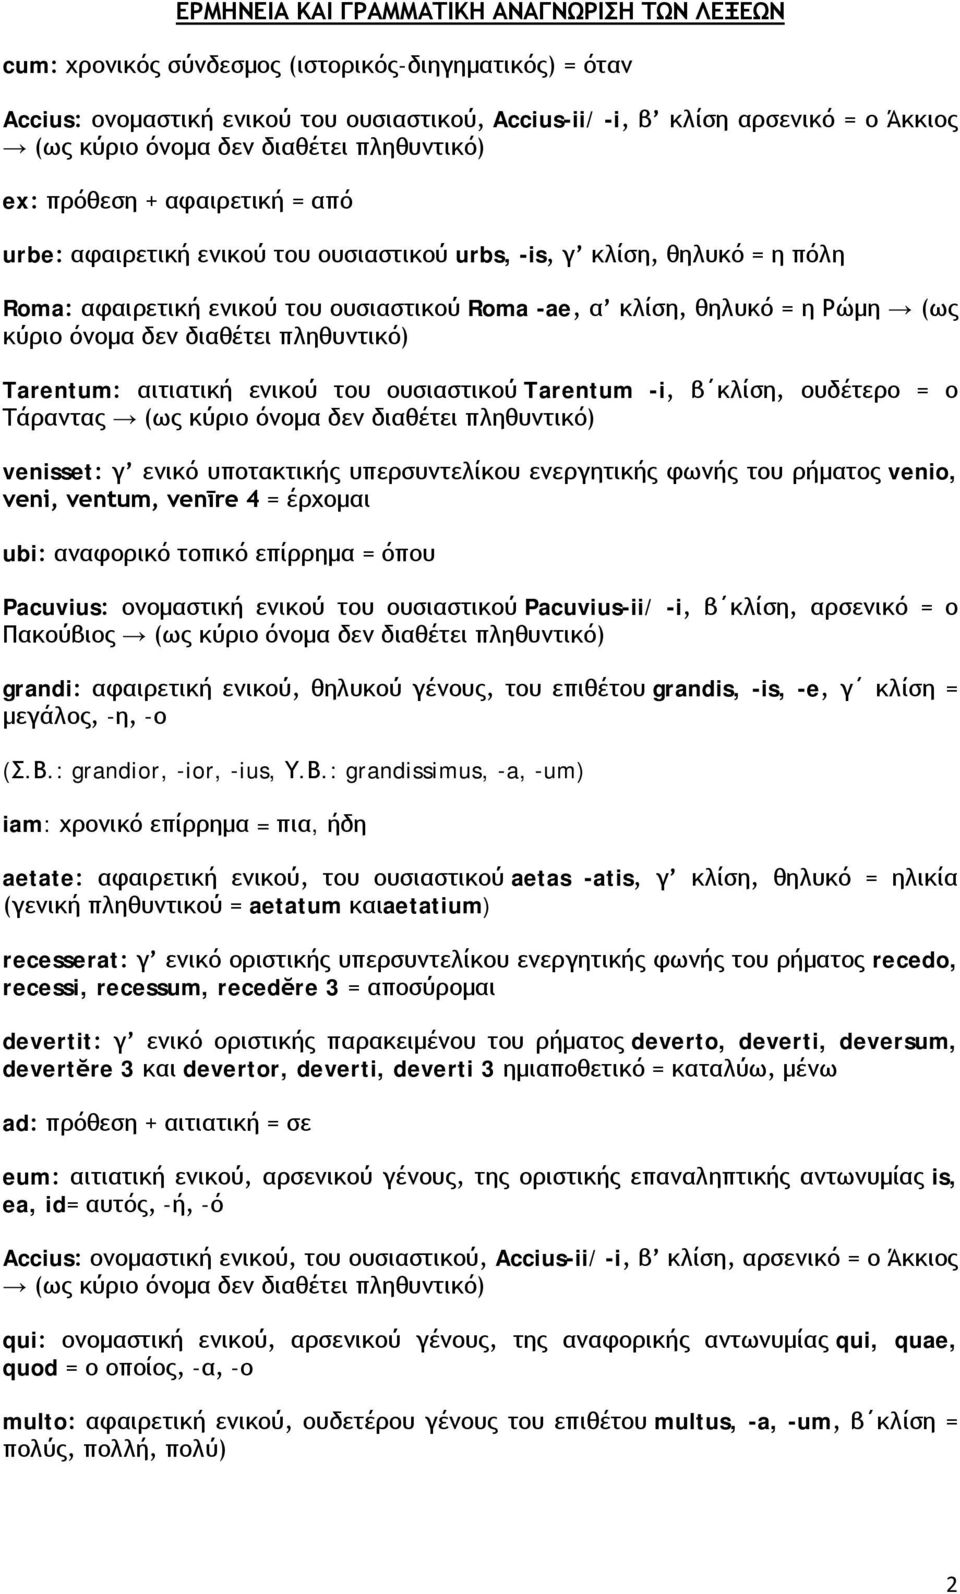 θηλυκό = η Ρώμη (ως κύριο όνομα δεν διαθέτει πληθυντικό) Tarentum: αιτιατική ενικού του ουσιαστικού Tarentum -i, β κλίση, ουδέτερο = ο Τάραντας (ως κύριο όνομα δεν διαθέτει πληθυντικό) venisset: γ